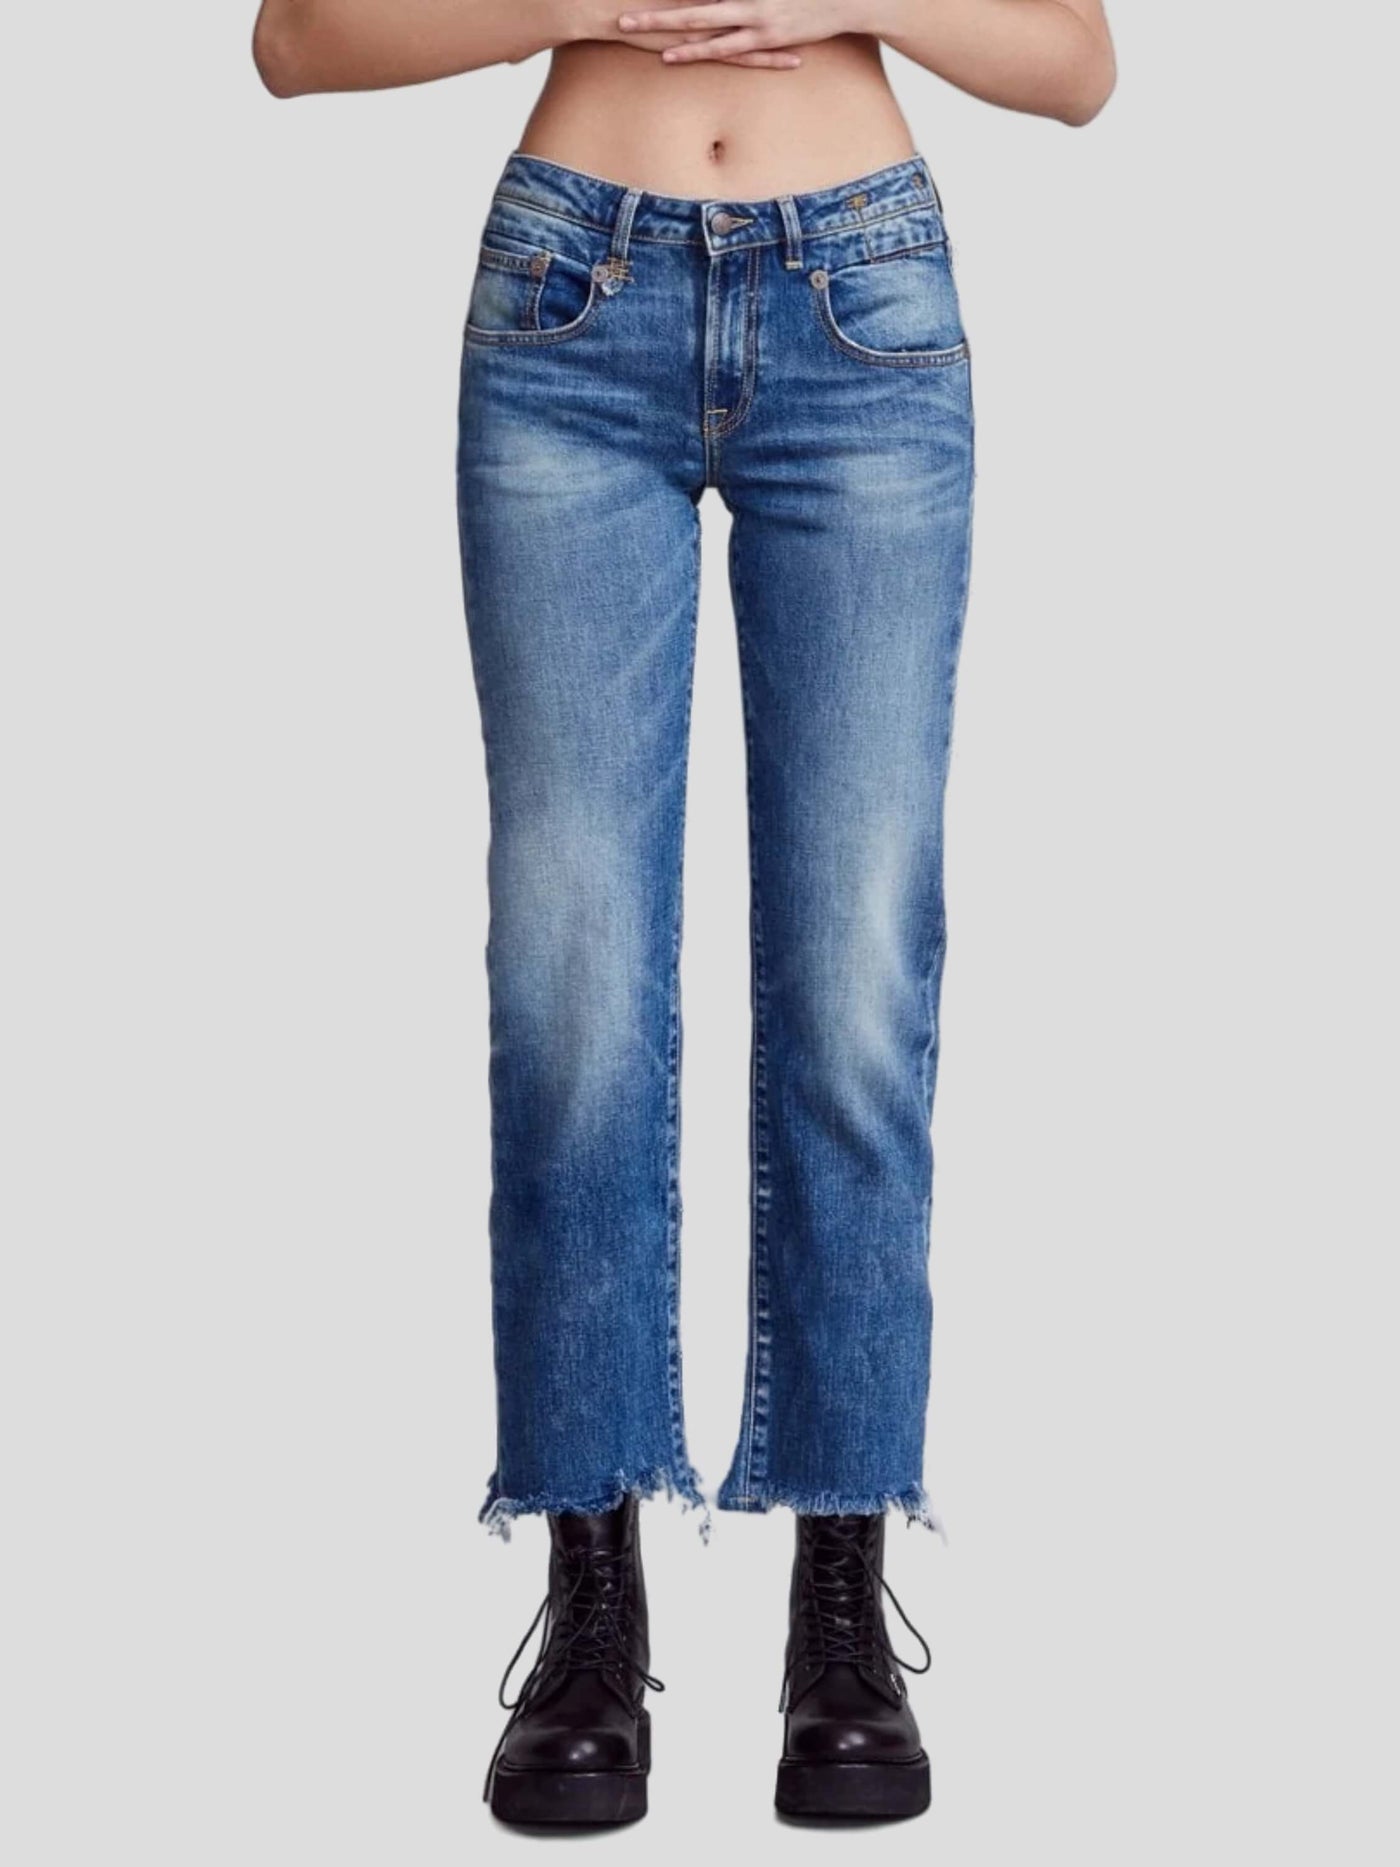 R13 Jeans | Jeans Boy straight in jasper-blau | R13 W0091 143A jasper / ADAM/EVE